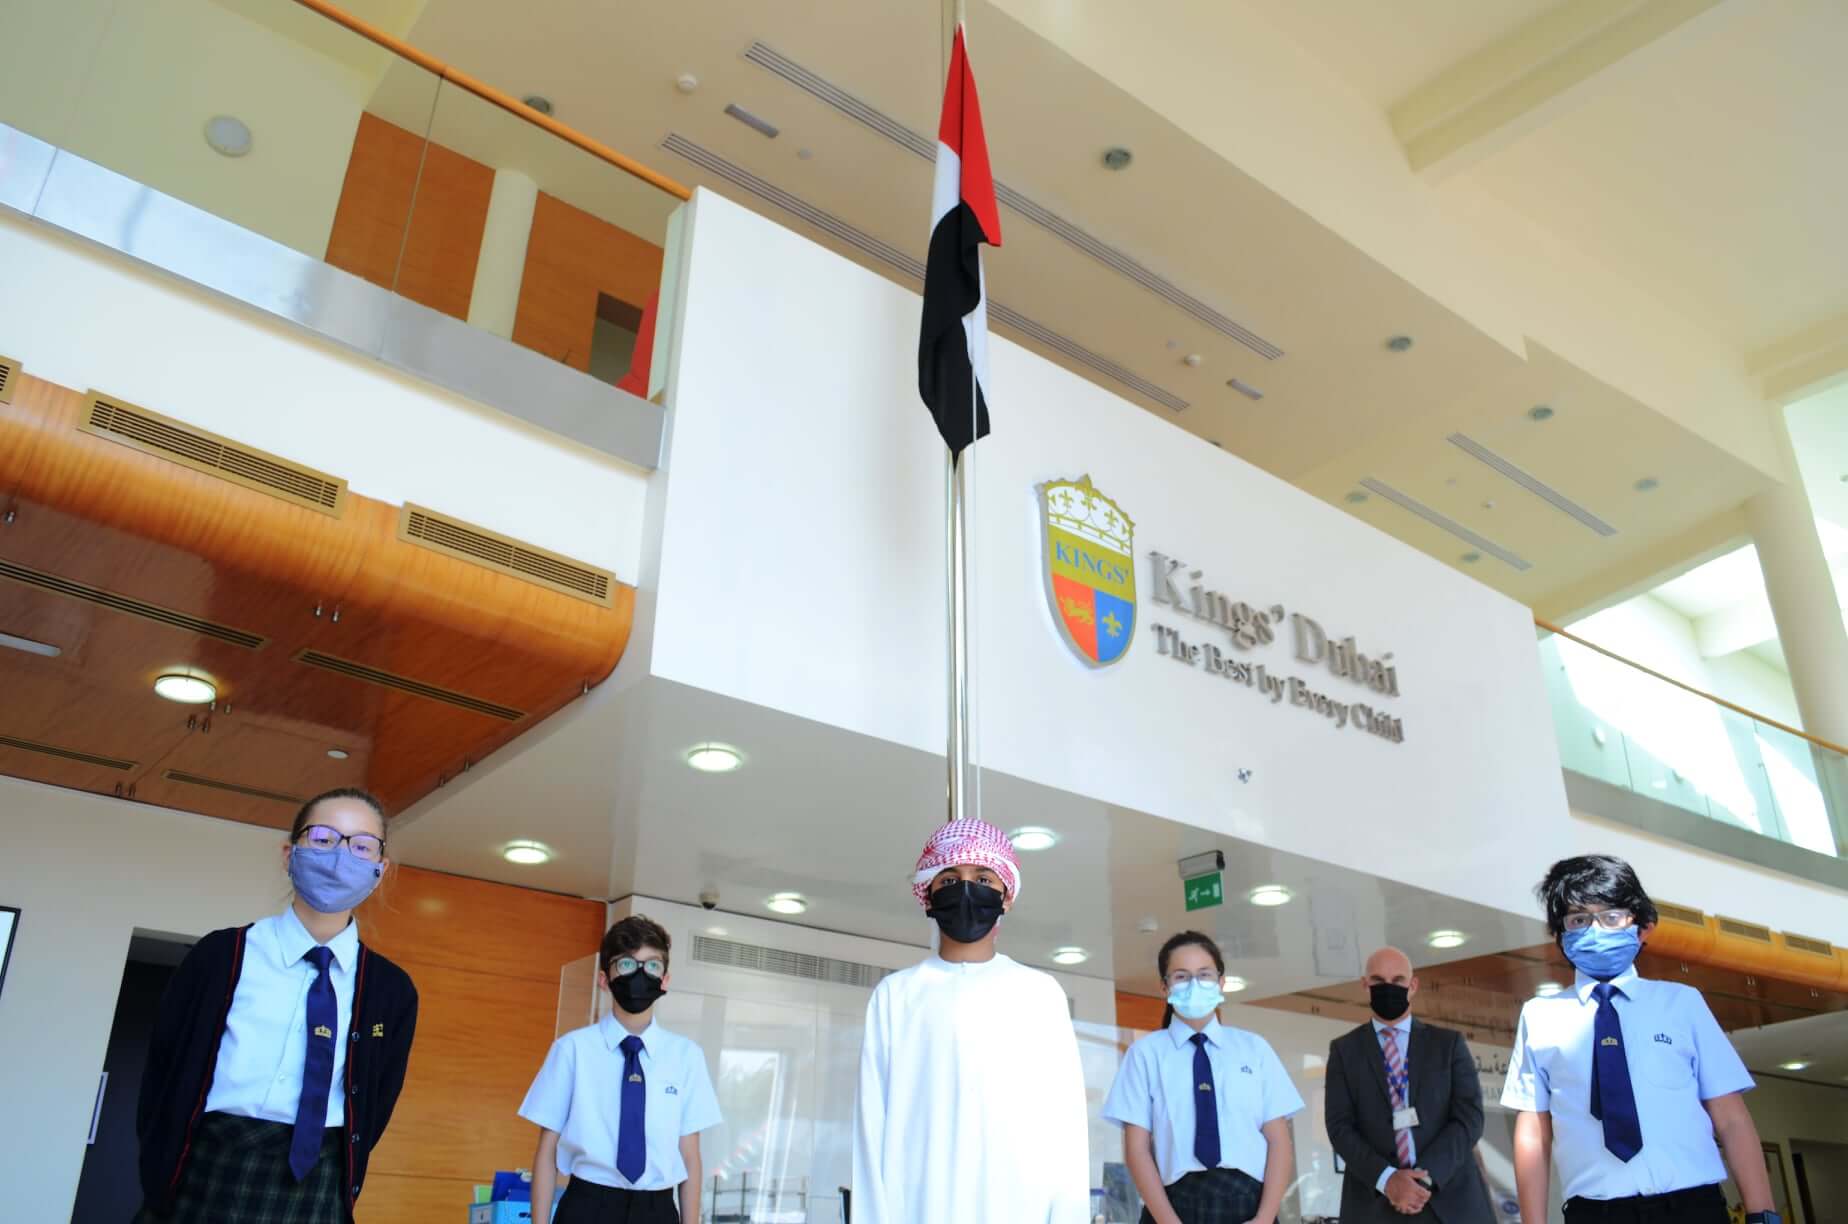 Kings’ School Dubai (Al Barsha and Umm Suqeim)